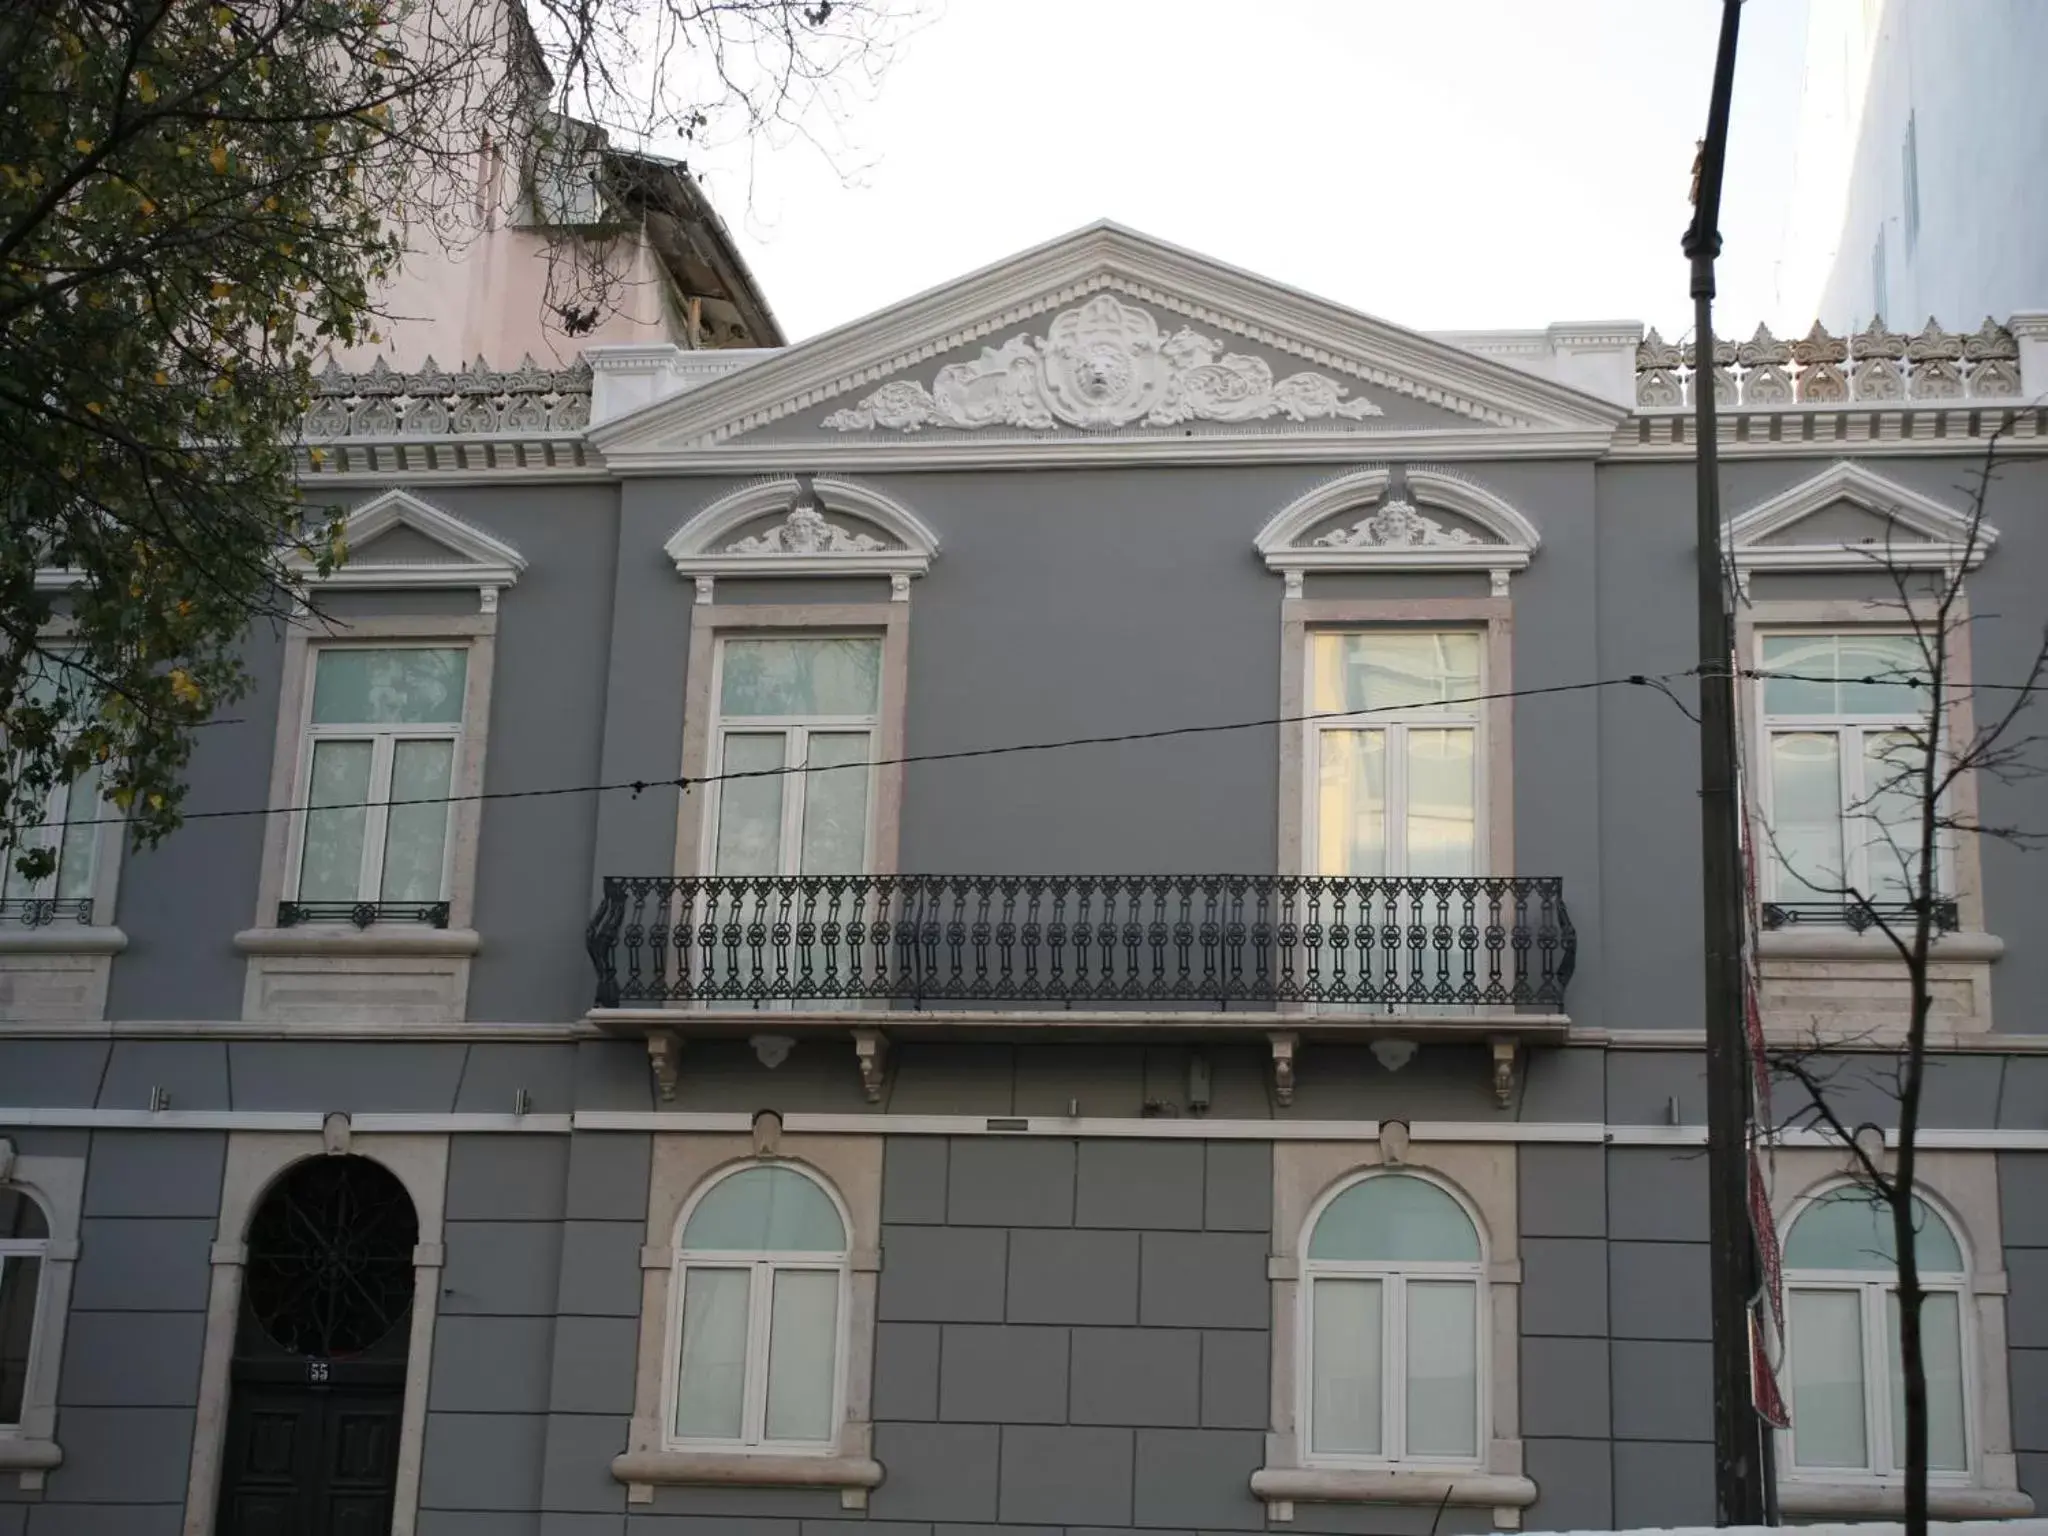 Facade/entrance, Property Building in Lisbon Style